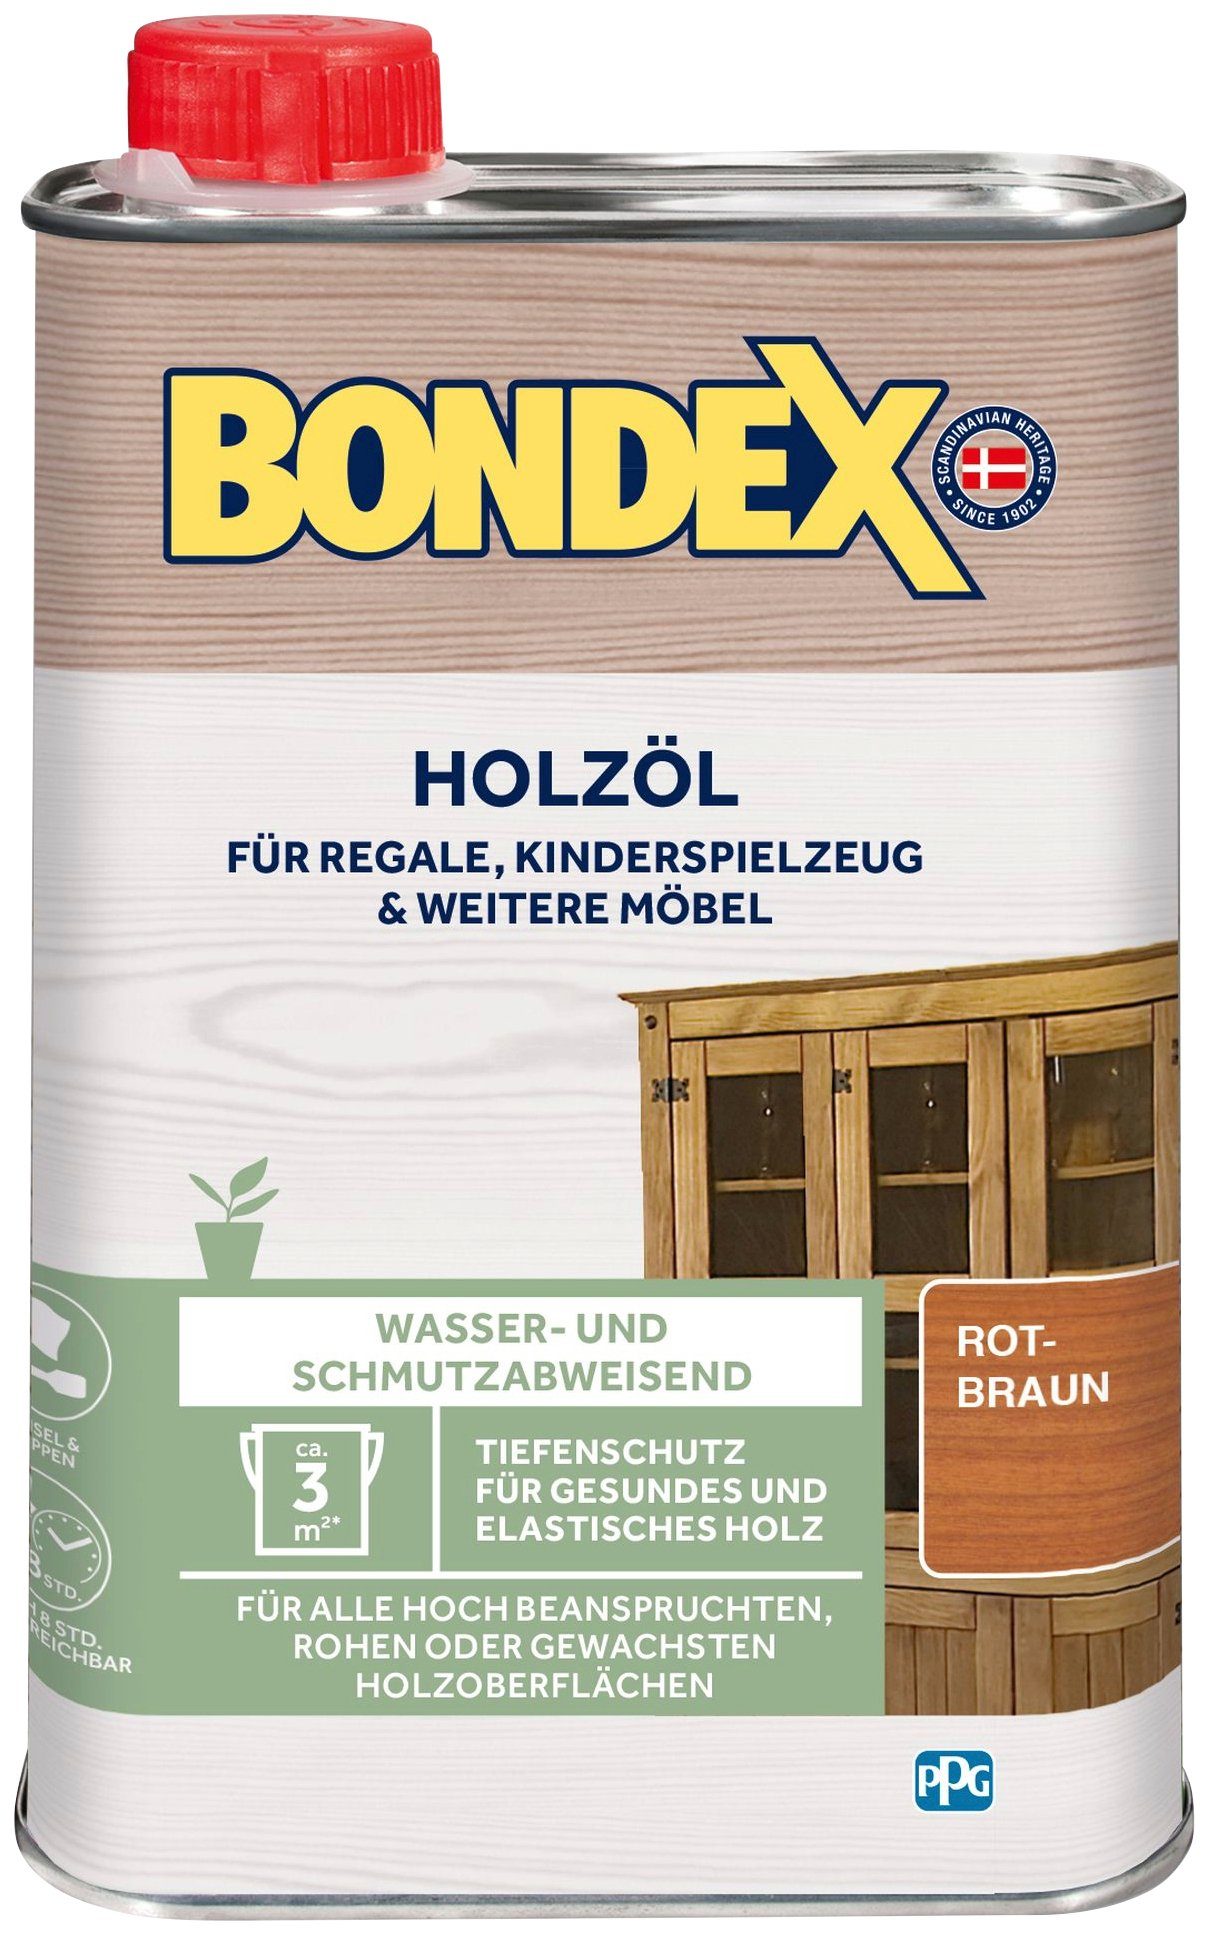 Bondex Holzöl Farblos, rotbraun HOLZÖL, 0,25 Liter Inhalt